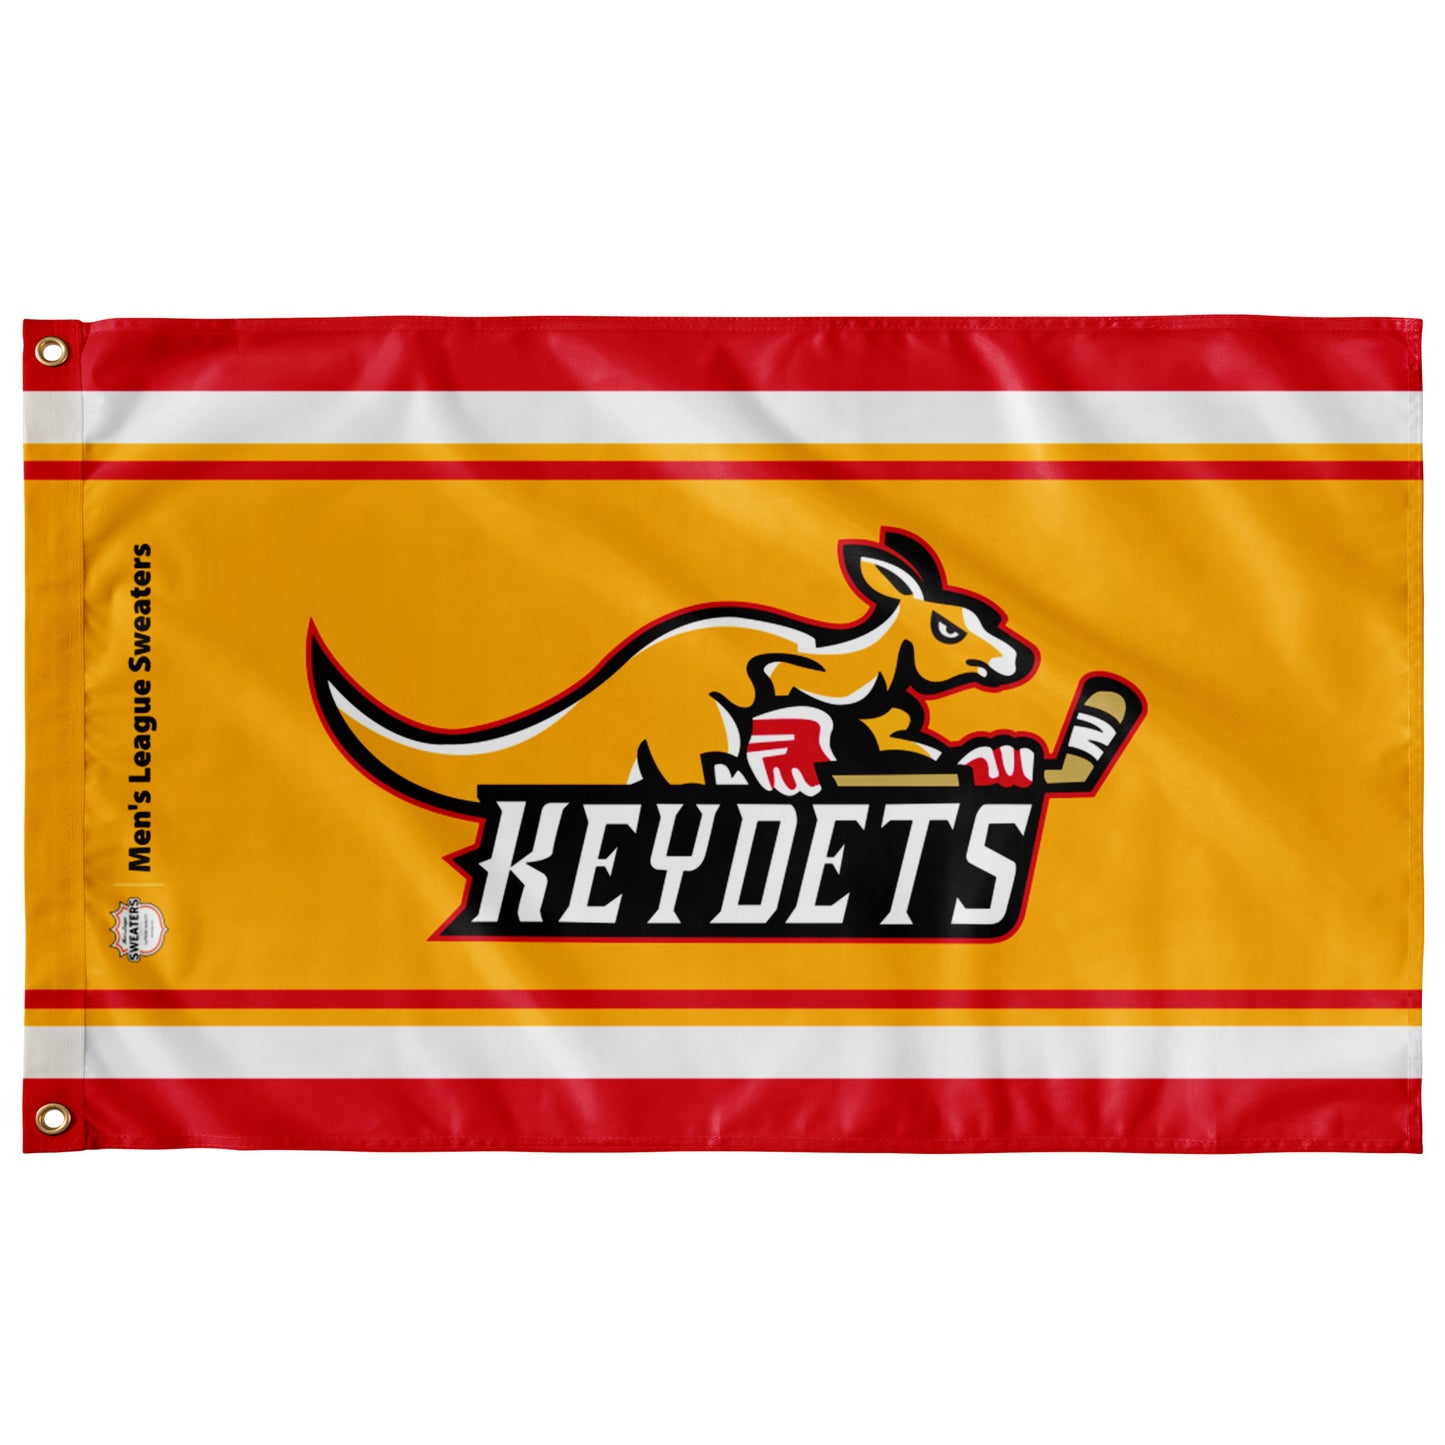 Keydets - Team Flag